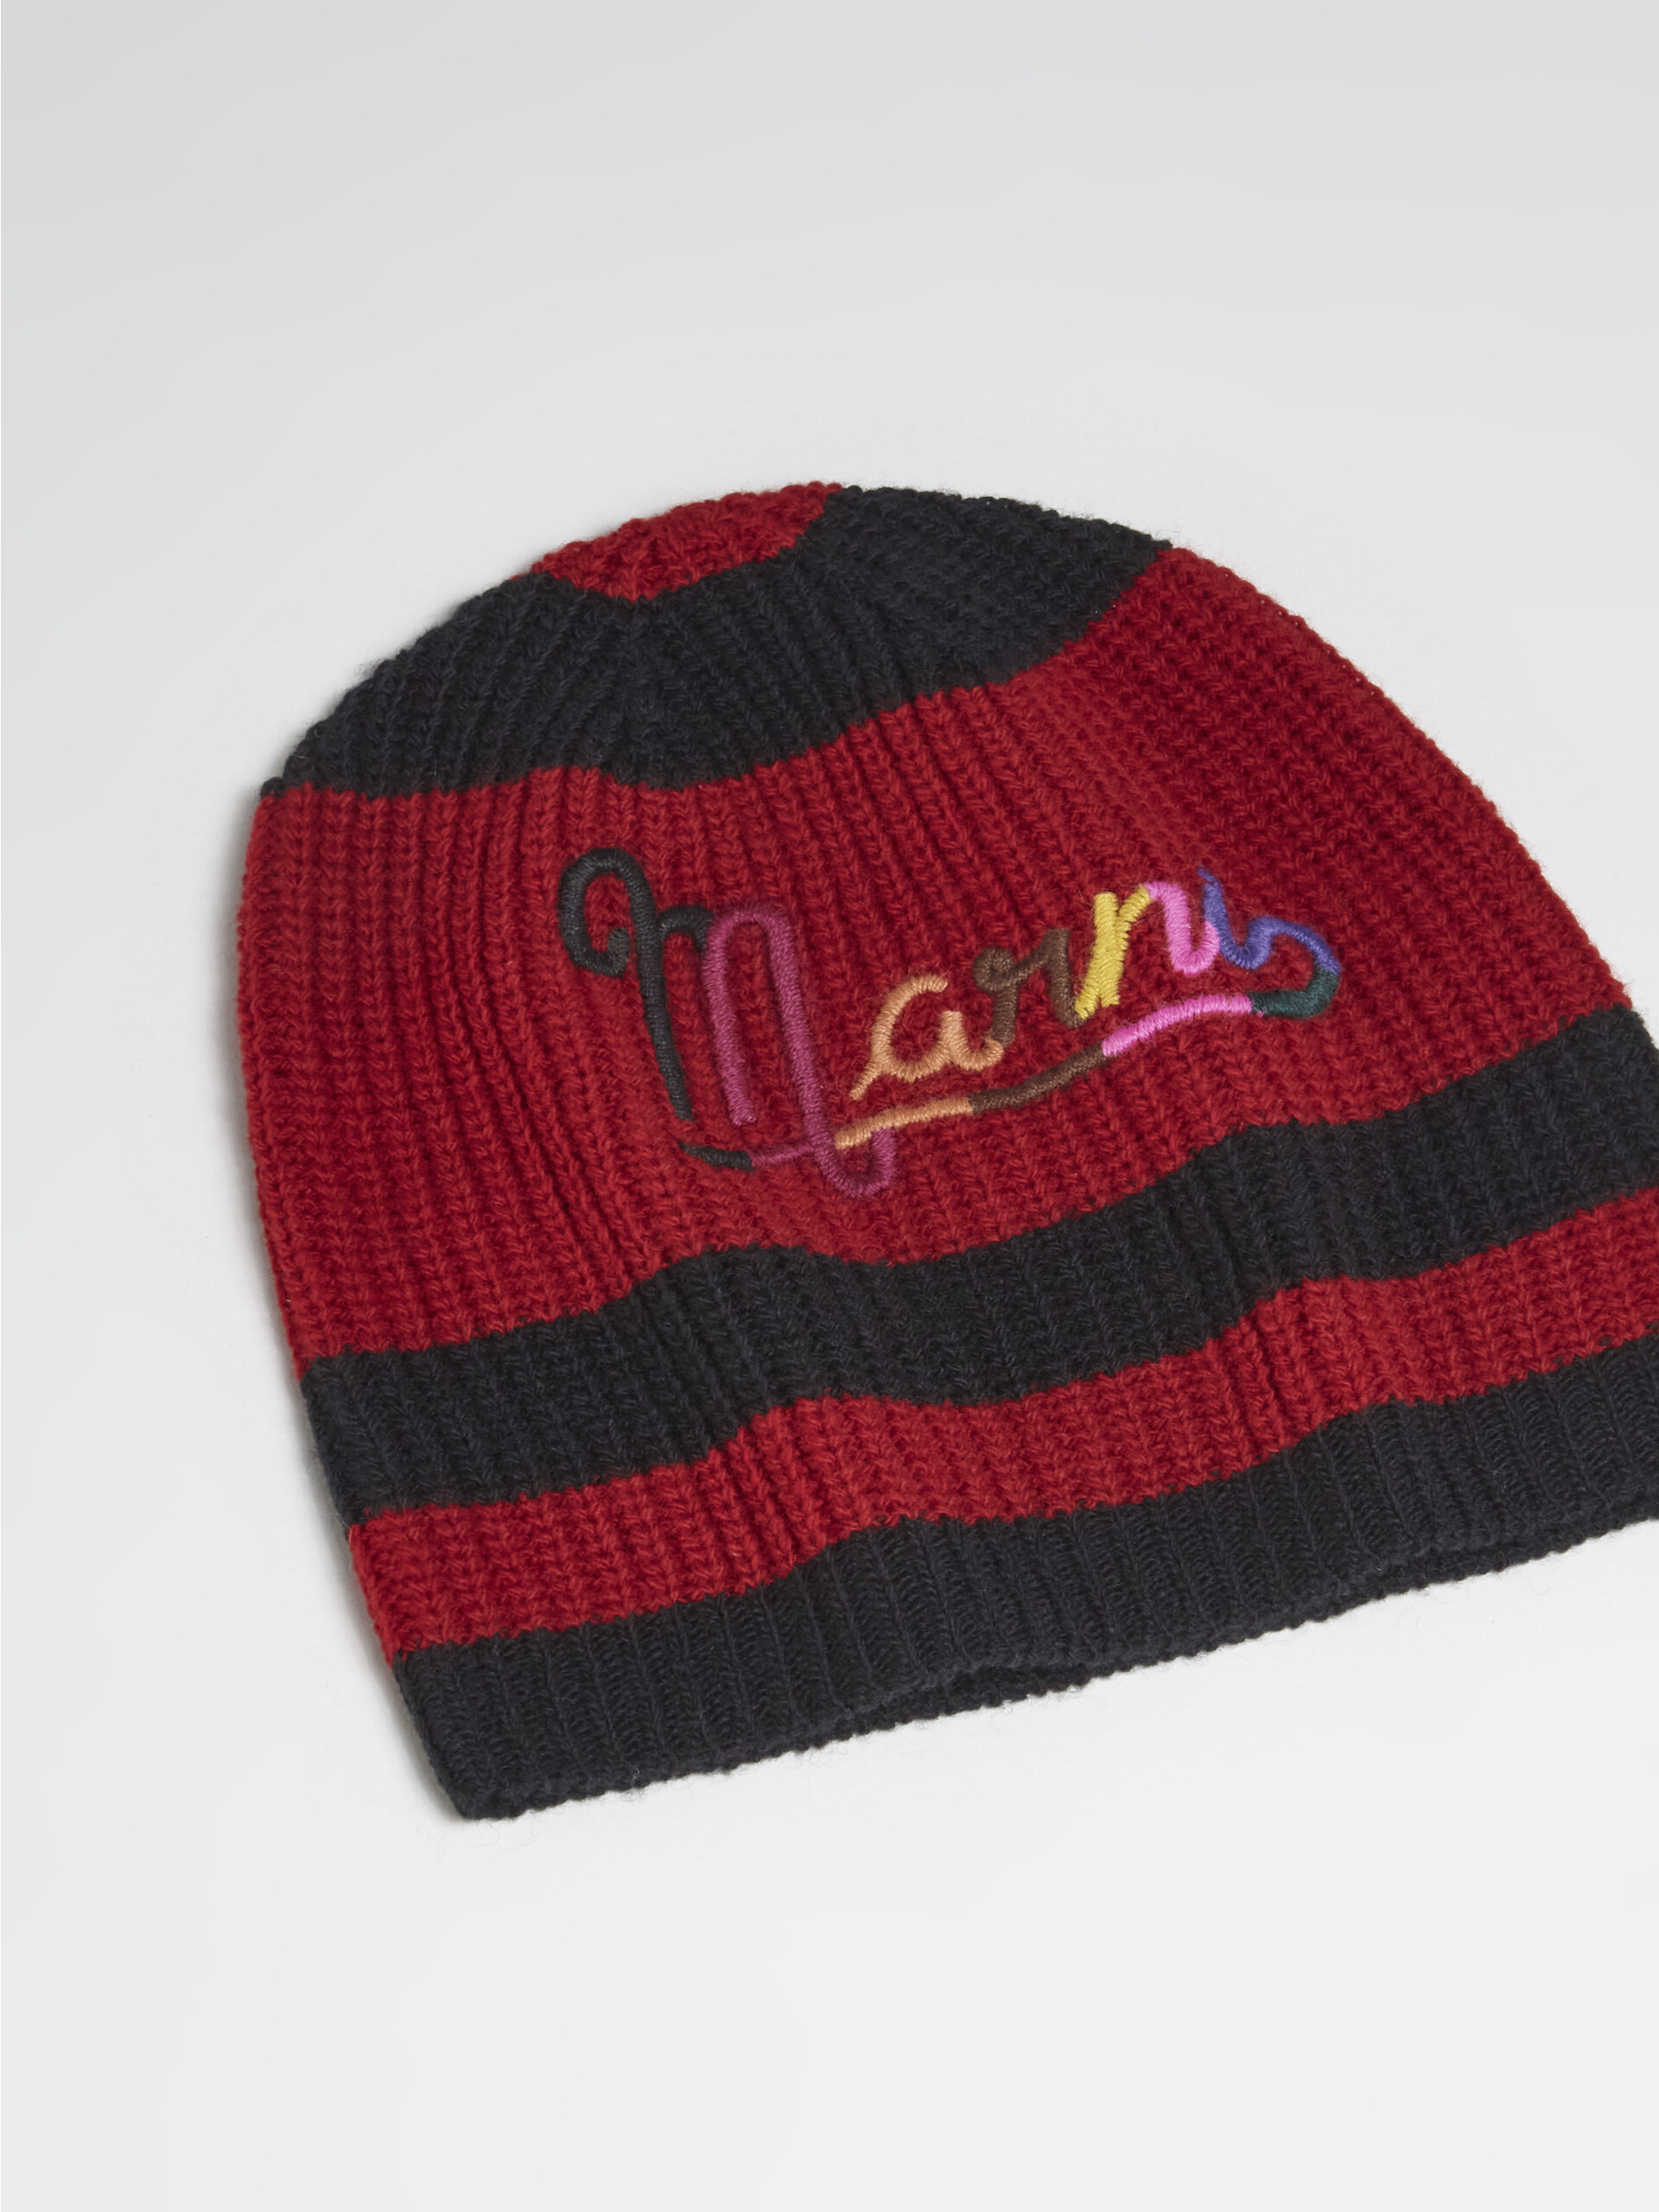 Cappello in lana Shetland nero e rosso - Cappelli - Image 3